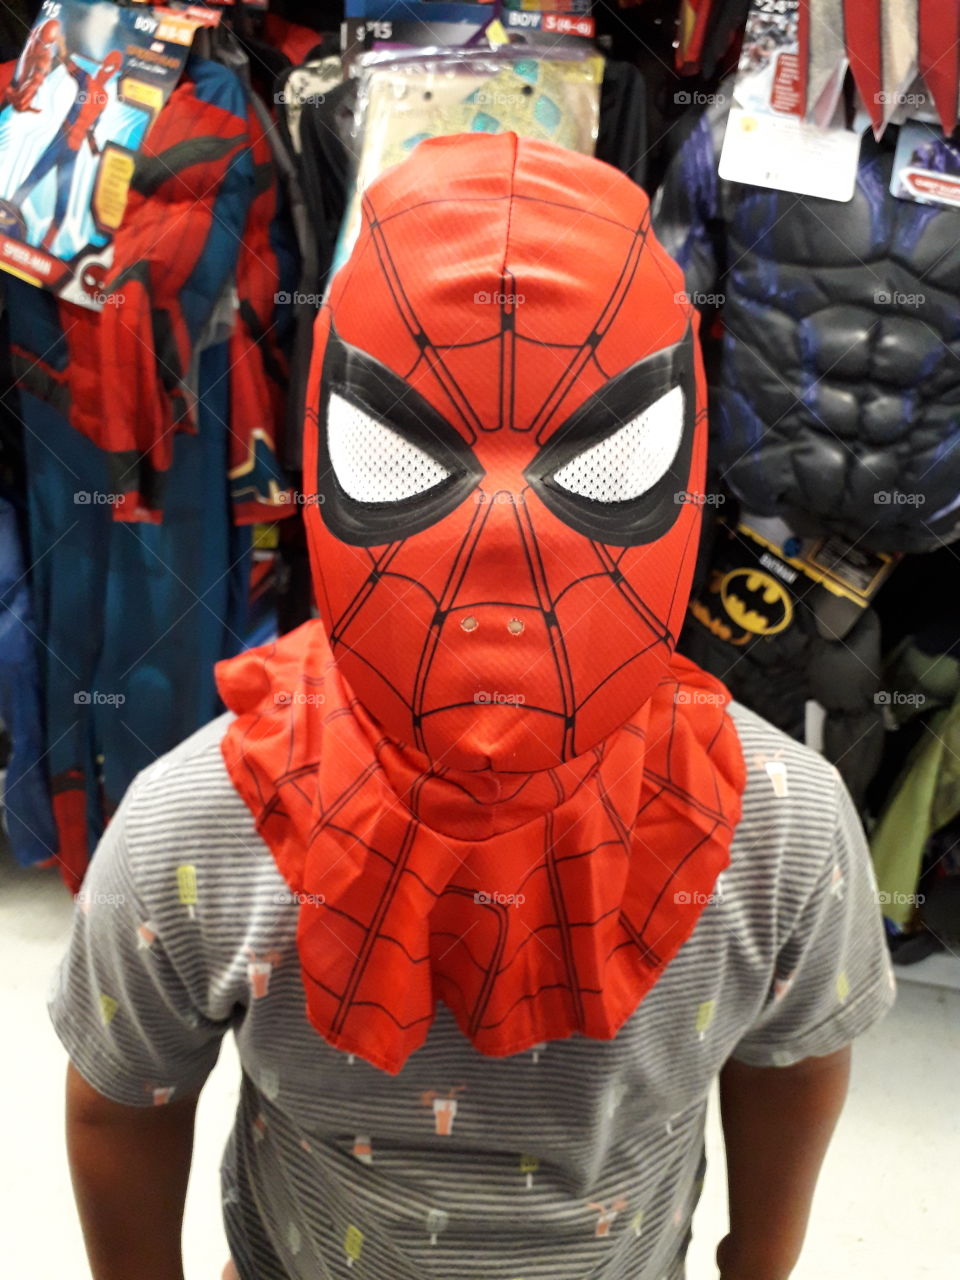 Spiderman fever